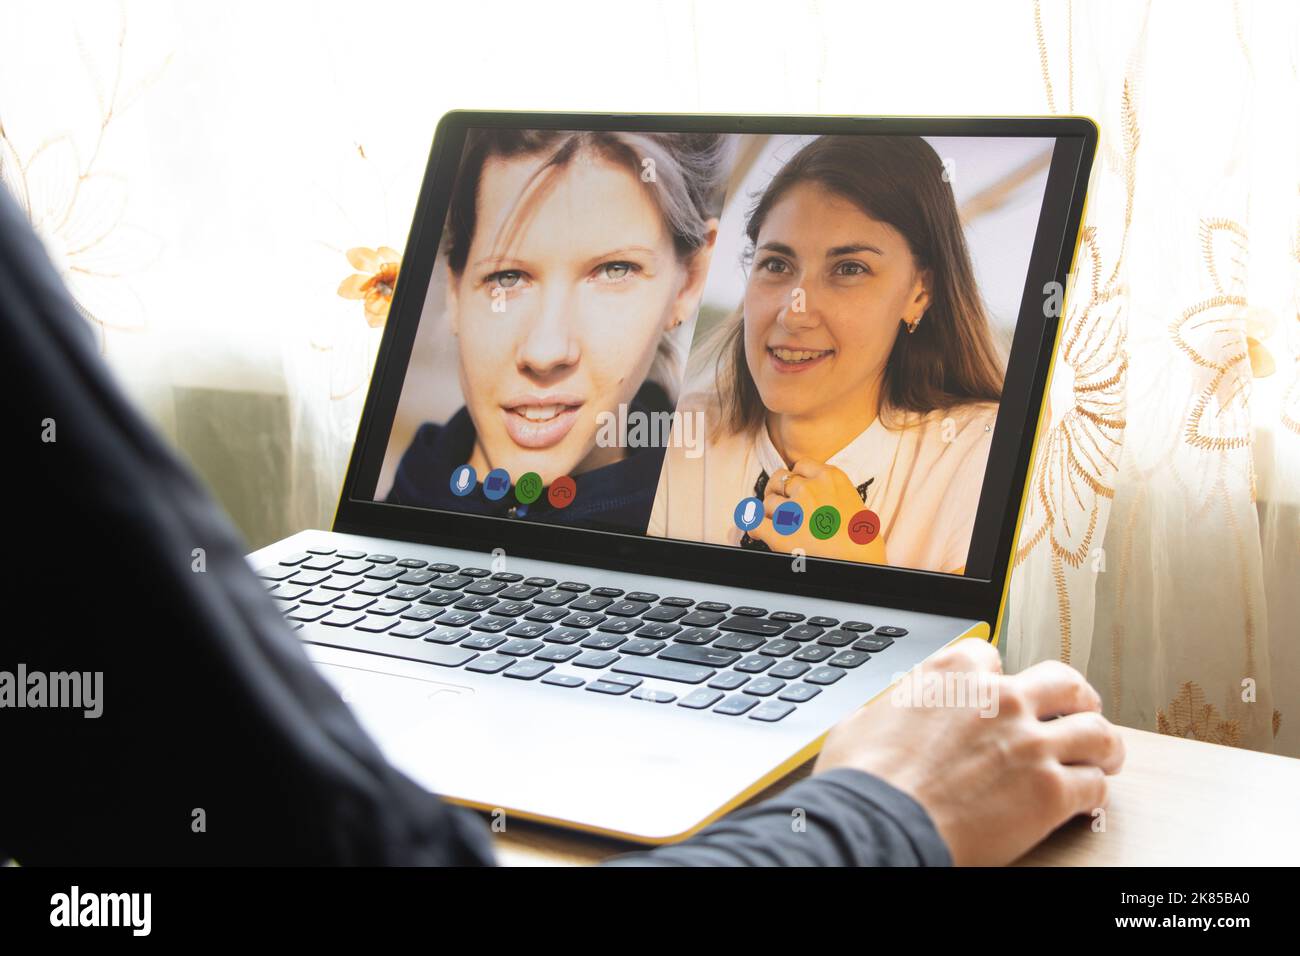 Ein Mädchen von zu Hause kommuniziert mit einem Laptop über Videokommunikation, Videokommunikation auf einem Laptop-Computer, Webcam, Video-Chat Stockfoto